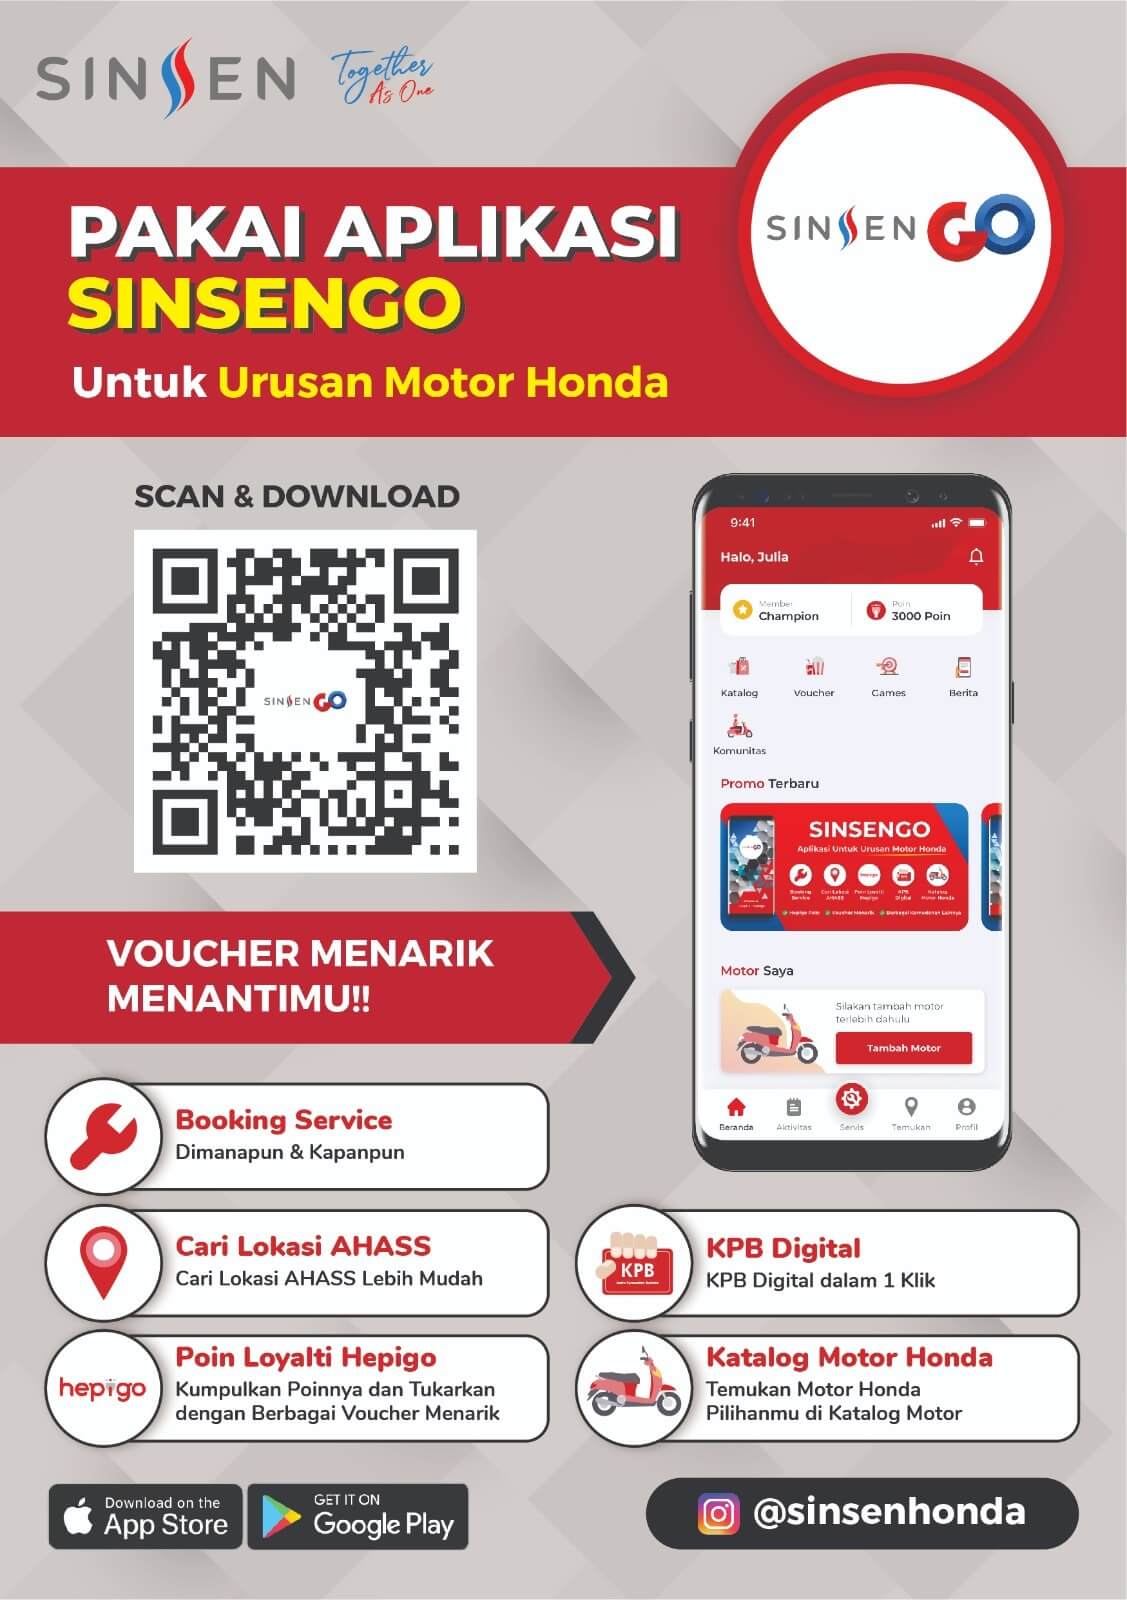 Lebih Praktis dan Seru, Download Aplikasi Sinsengo di Handphone Anda Sekarang